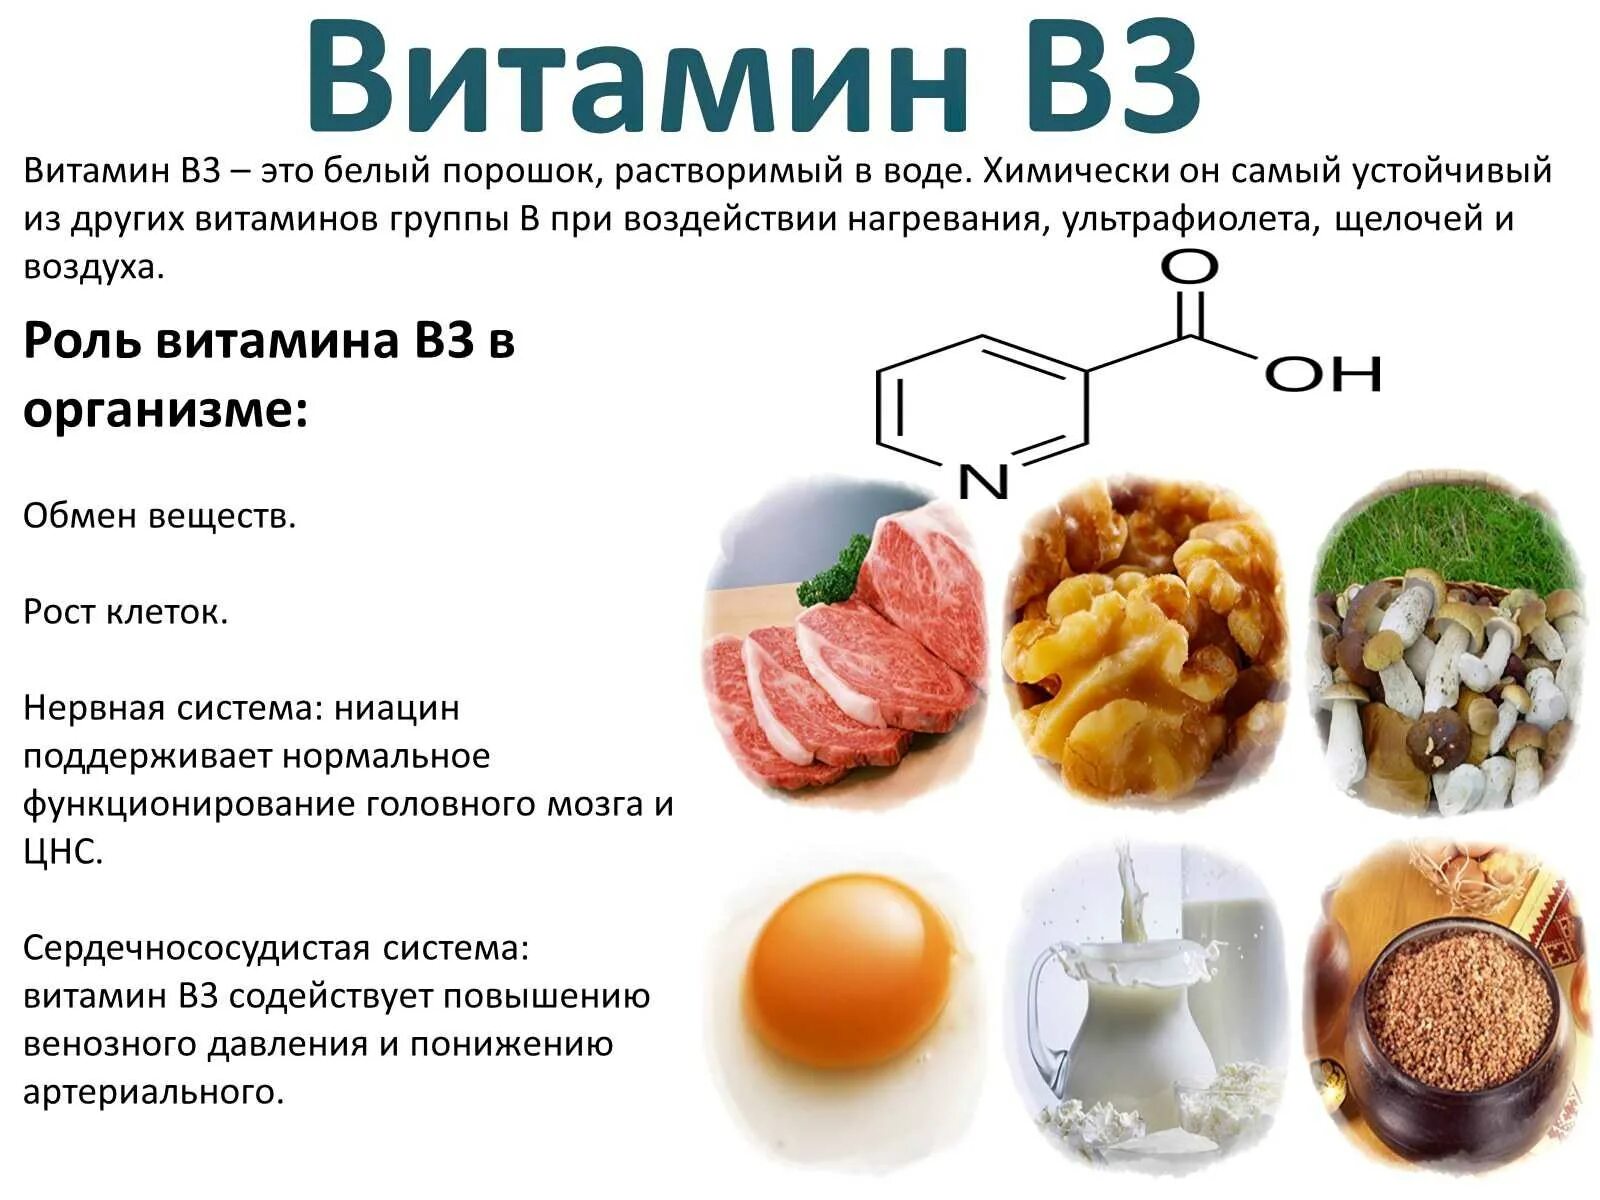 Витамин в6 польза. Витамин в3 никотиновая кислота дефицит. Витамин б3 источники. Никотиновой кислоты в3 витамина источники. Витамин b3 (витамин PP, никотиновая кислота).